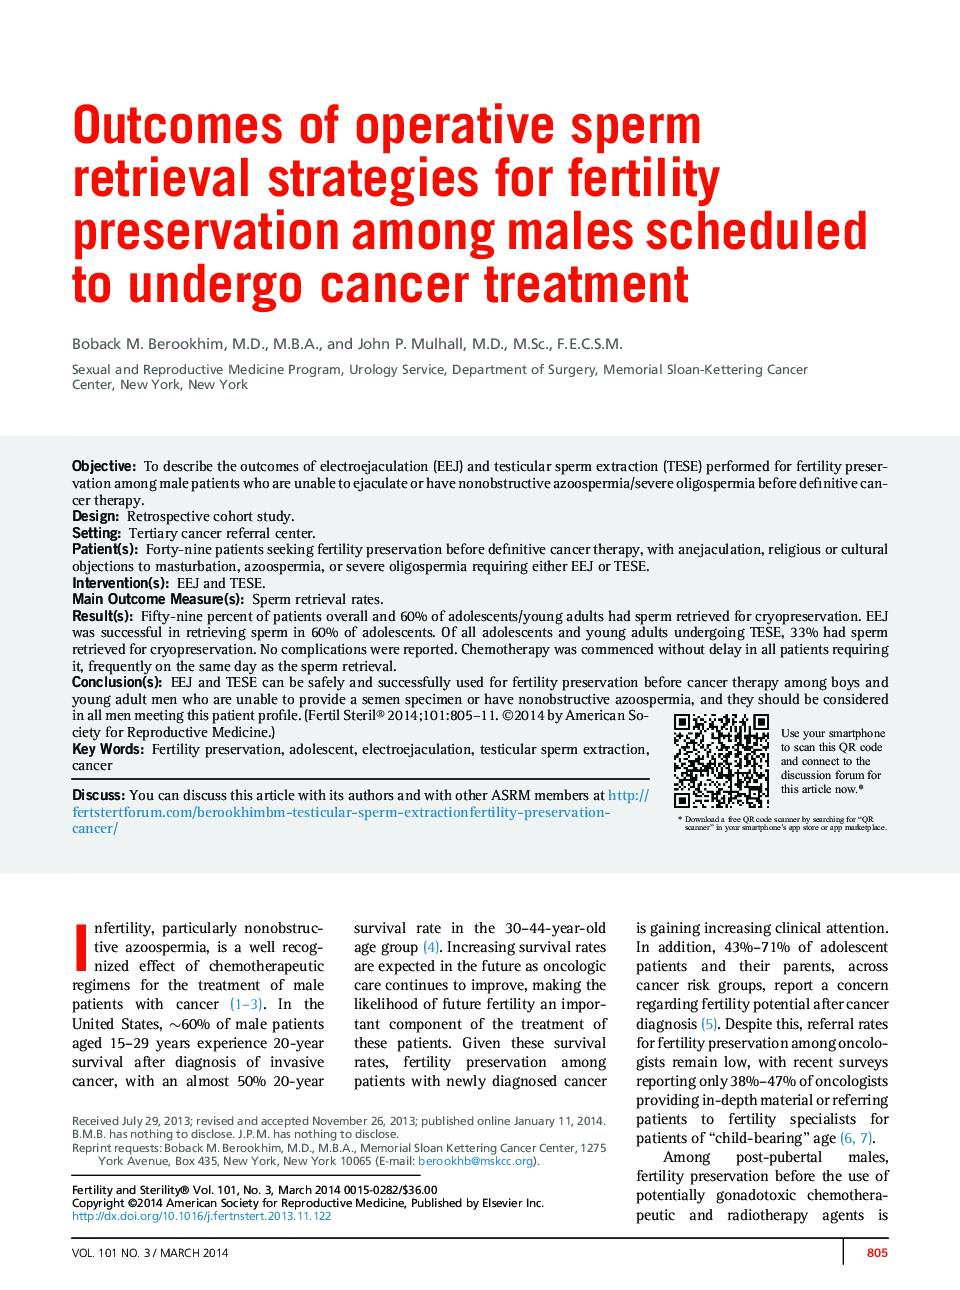 نتایج استراتژی های بازیابی اسپرم عملیاتی برای حفظ باروری در میان مردان برنامه ریزی شده برای درمان سرطان 